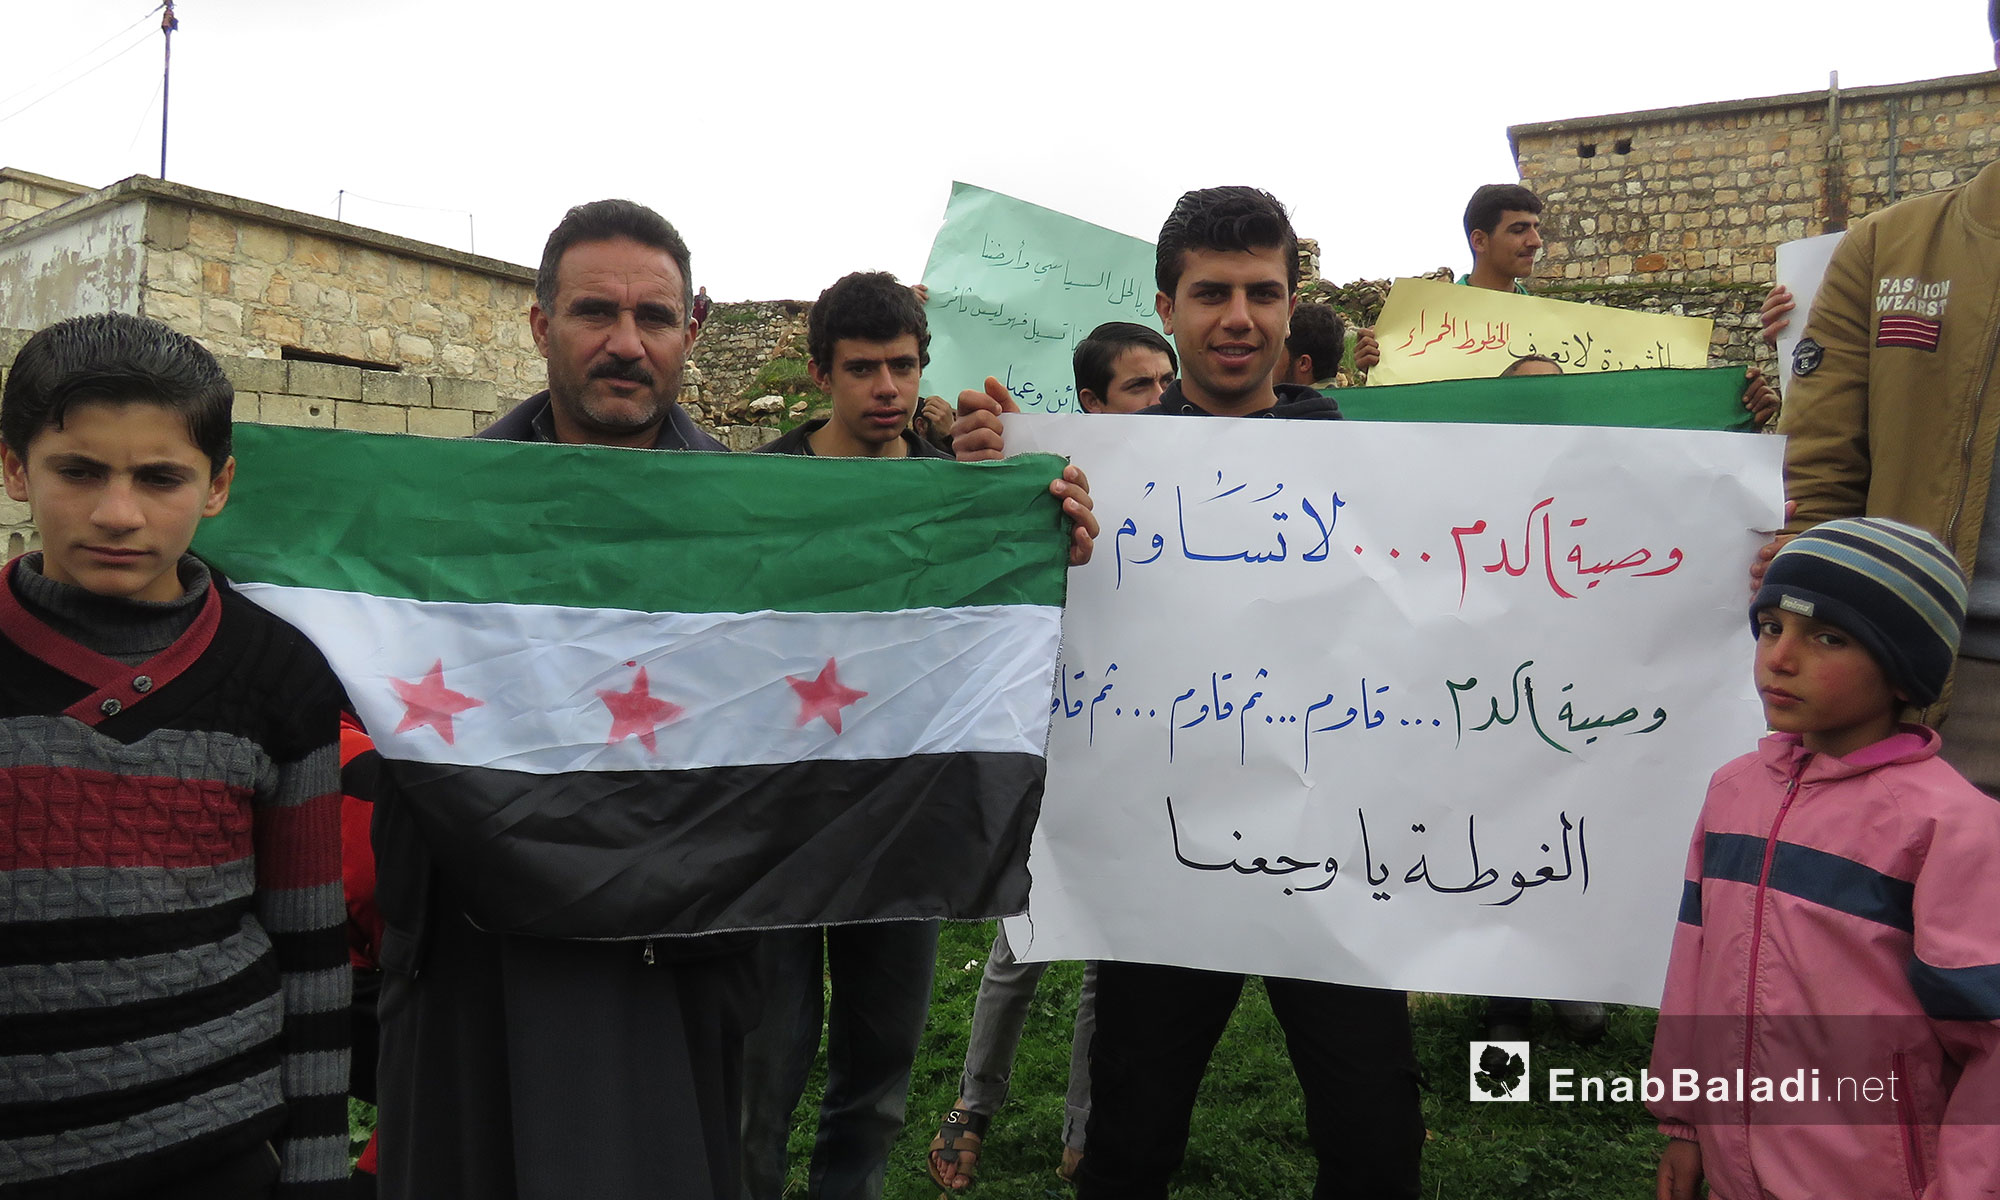 ناشطون من ريف حماة يتظاهرون نصرة للغوطة الشرقية في جبل الزاوية بريف إدلب - 23 شباط 2018 (عنب بلدي)